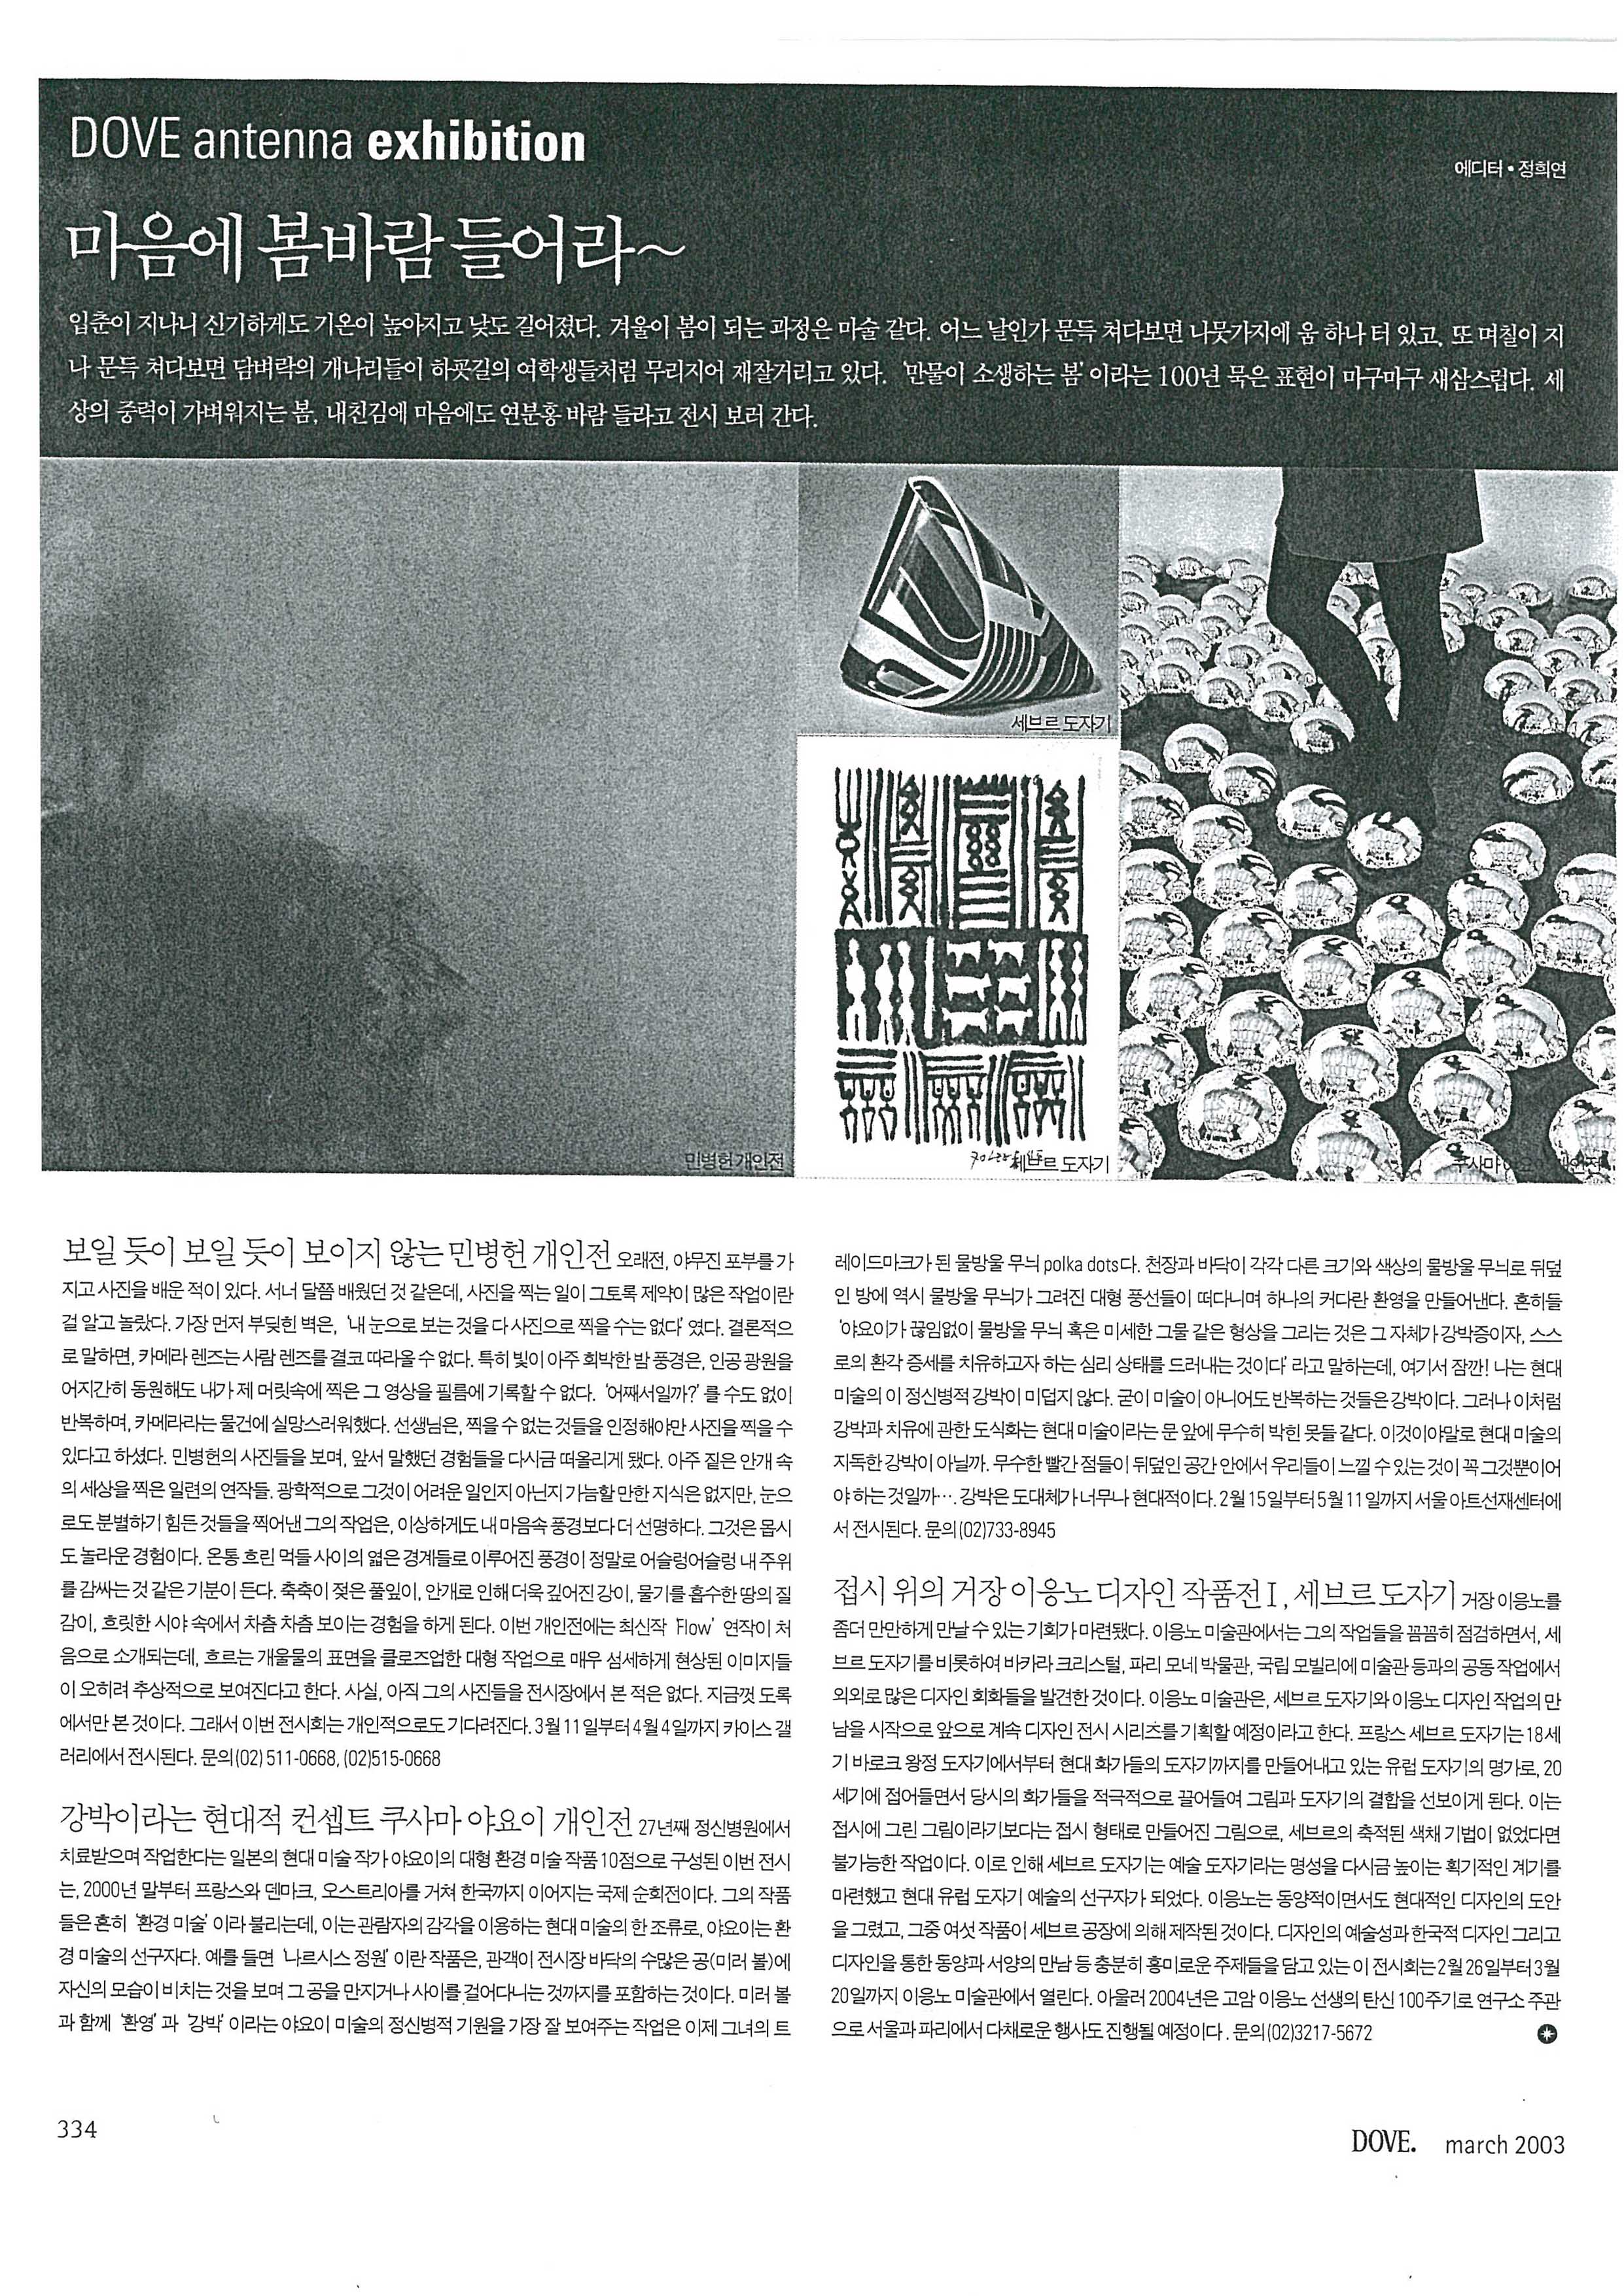 「마음에 봄바람 들어라~: 접시 위의 거장 이응노 디자인 작품전 Ⅰ, 세브르 도자기」, 『DOVE』